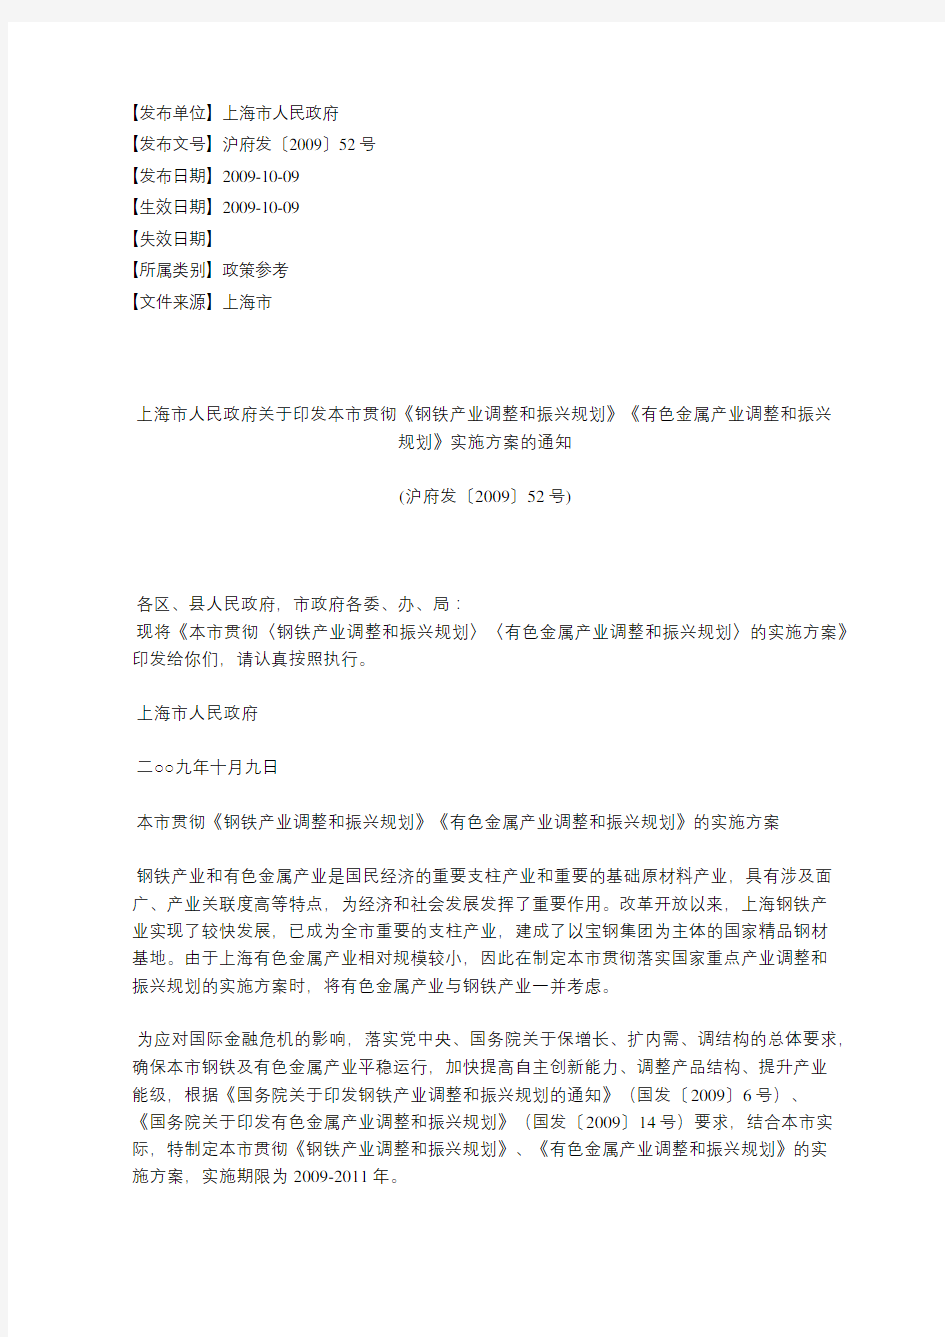 上海市人民政府关于印发本市贯彻《钢铁产业调整和振兴规划》《有